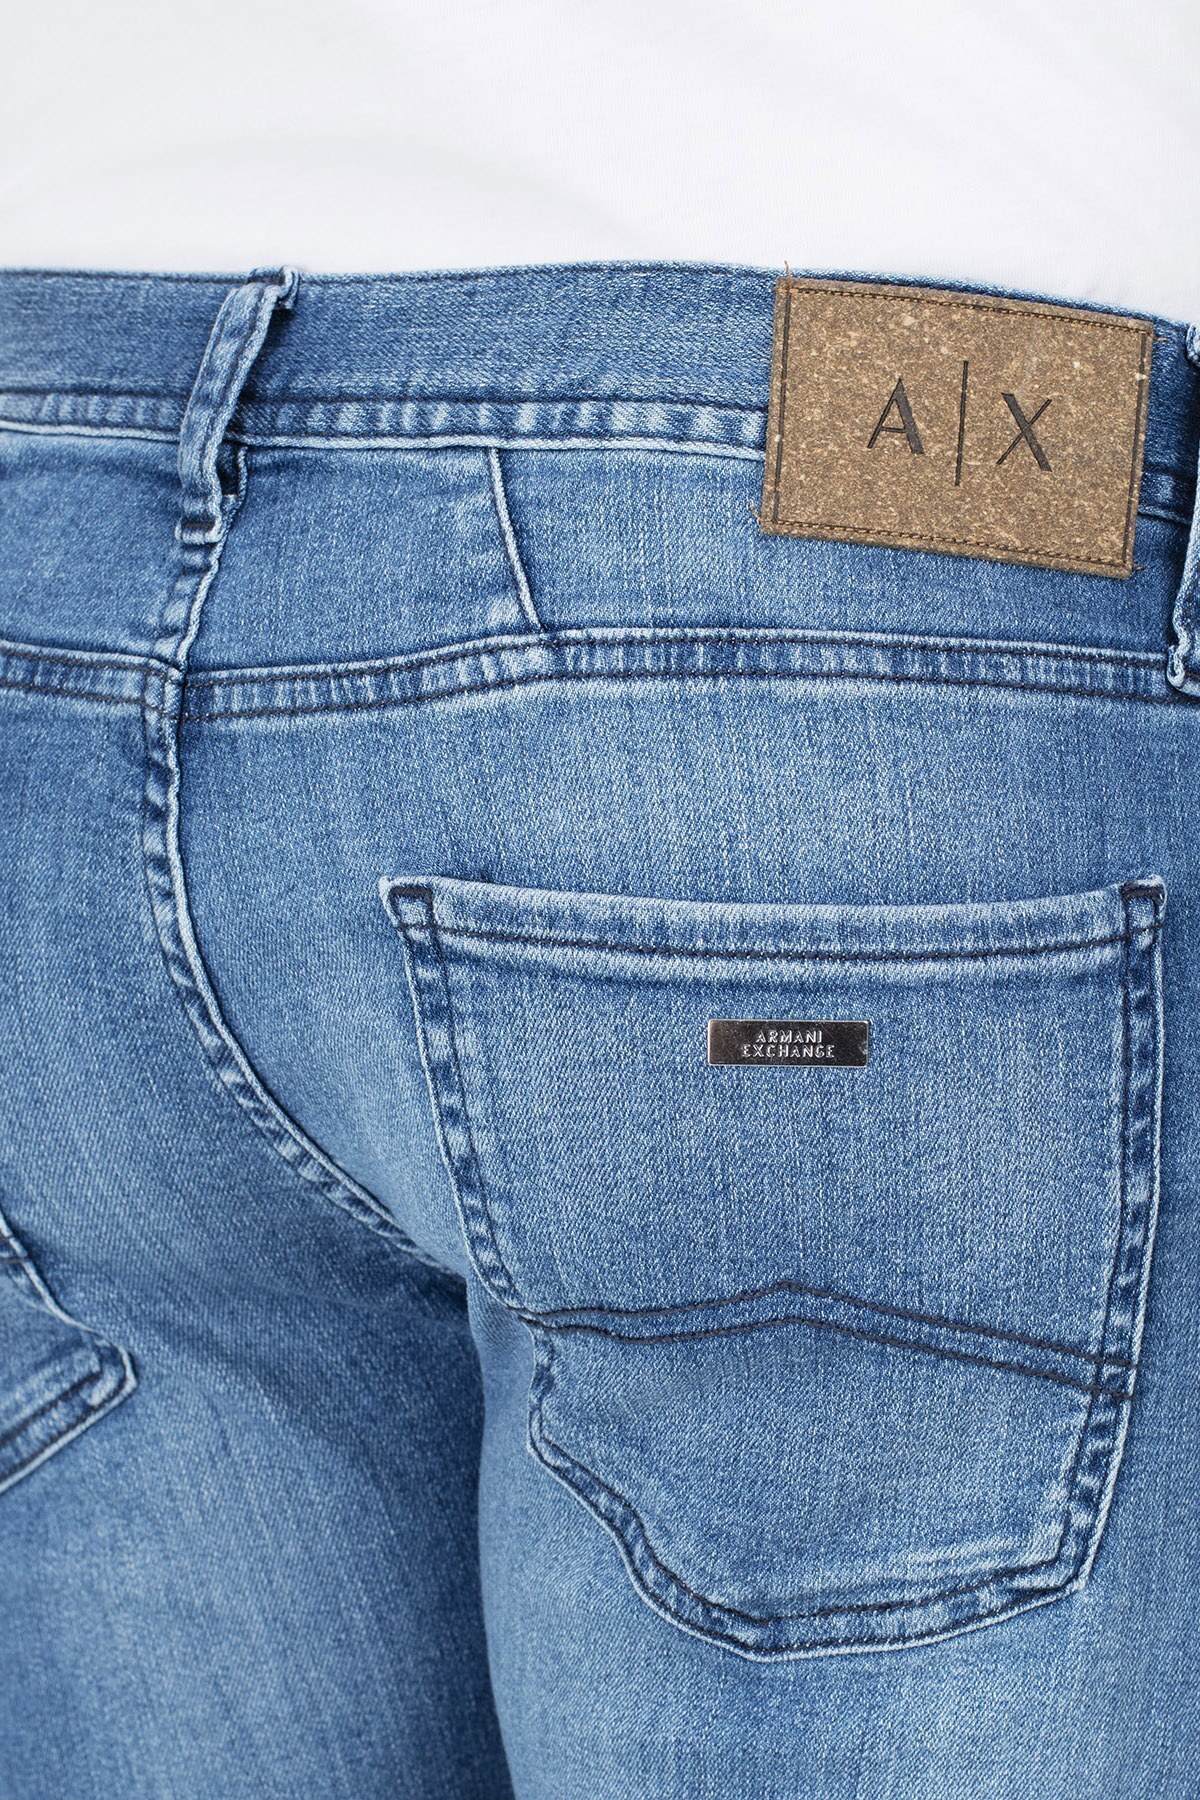 Armani Exchange J13 Jeans Erkek Kot Pantolon 3HZJ13 Z1RXZ 1500 LACİVERT